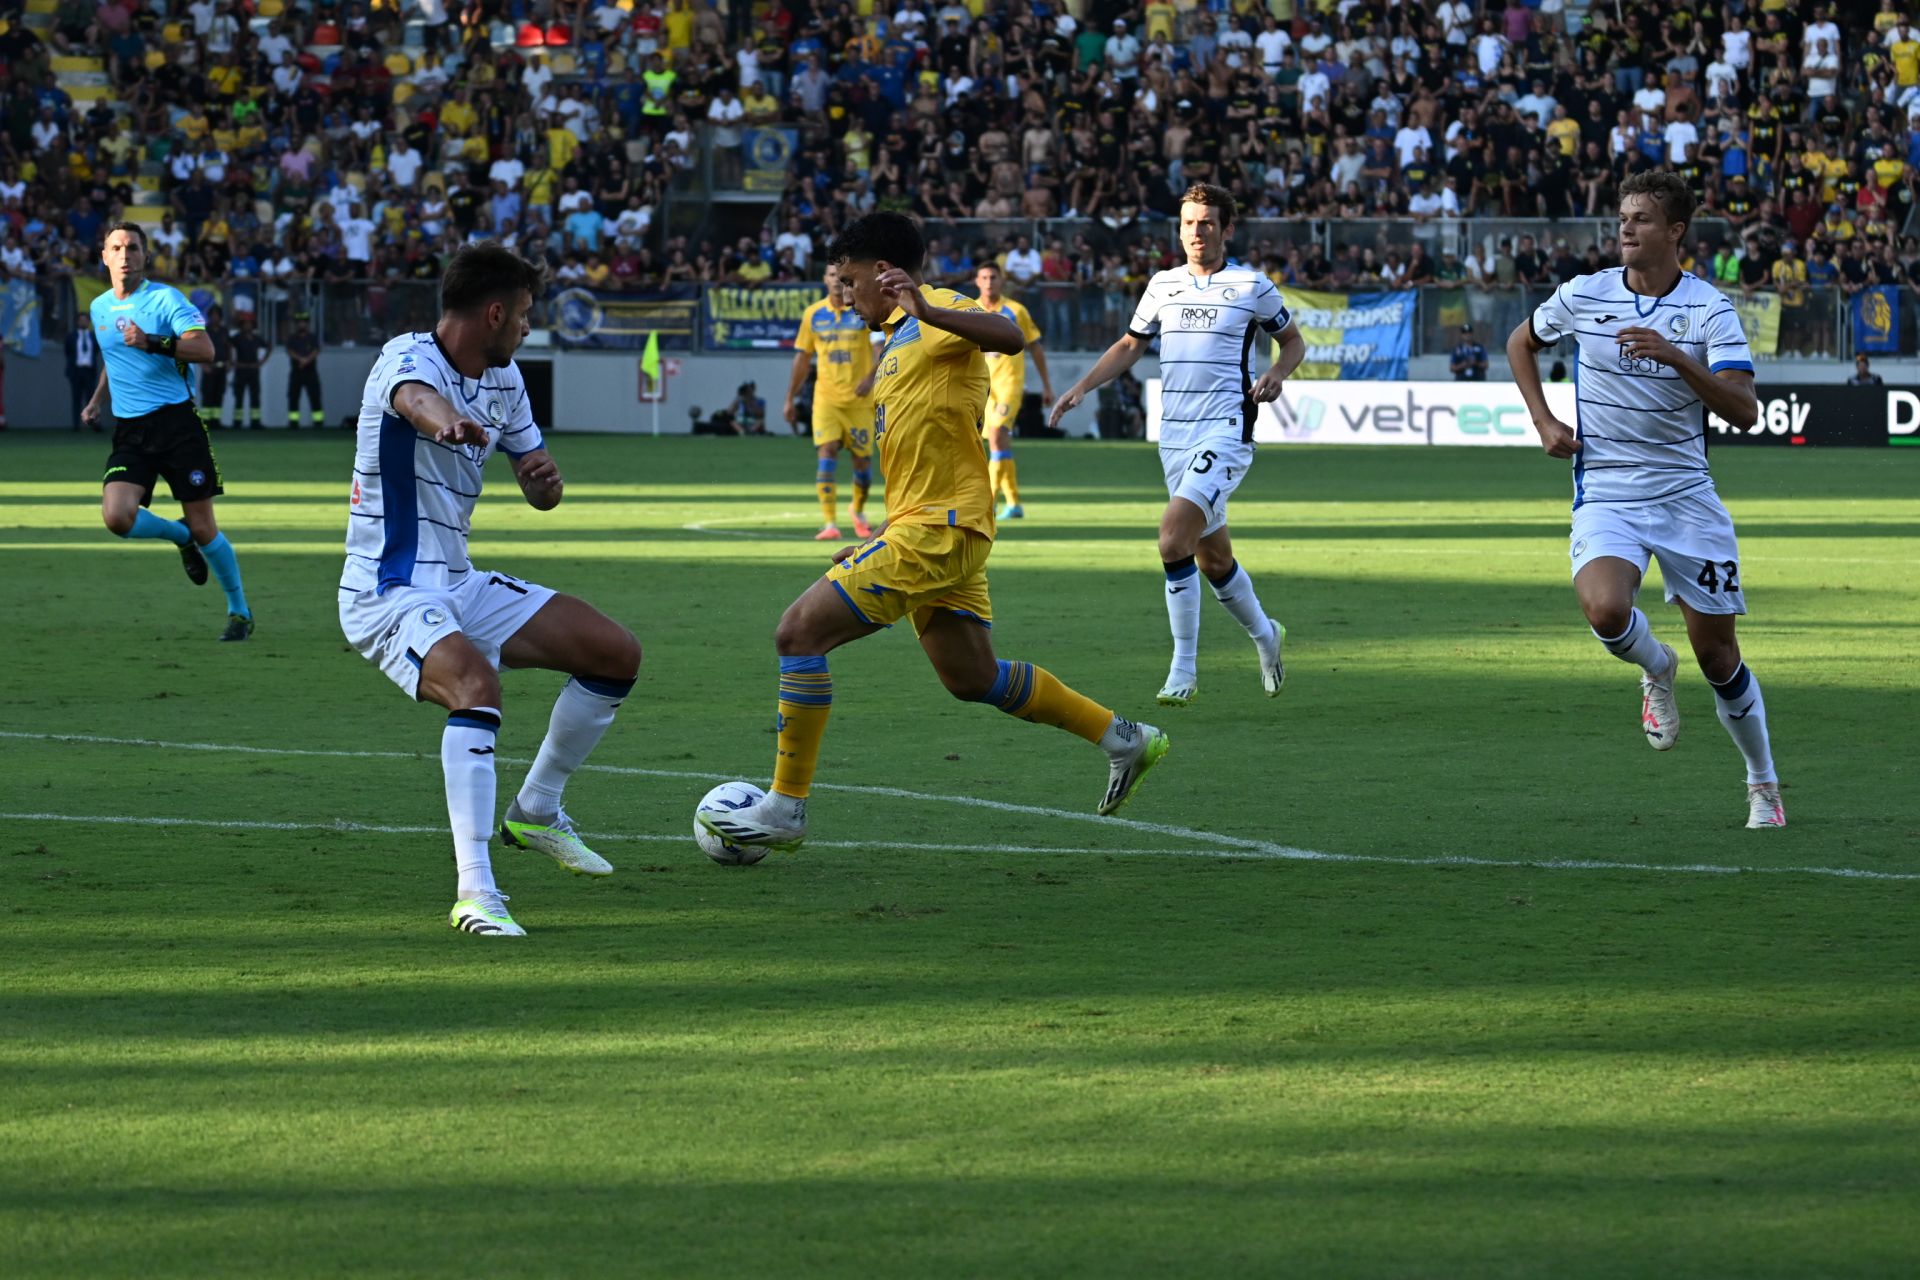 FROSINONE-ATALANTA 2-1, IL TABELLINO – Frosinone Calcio